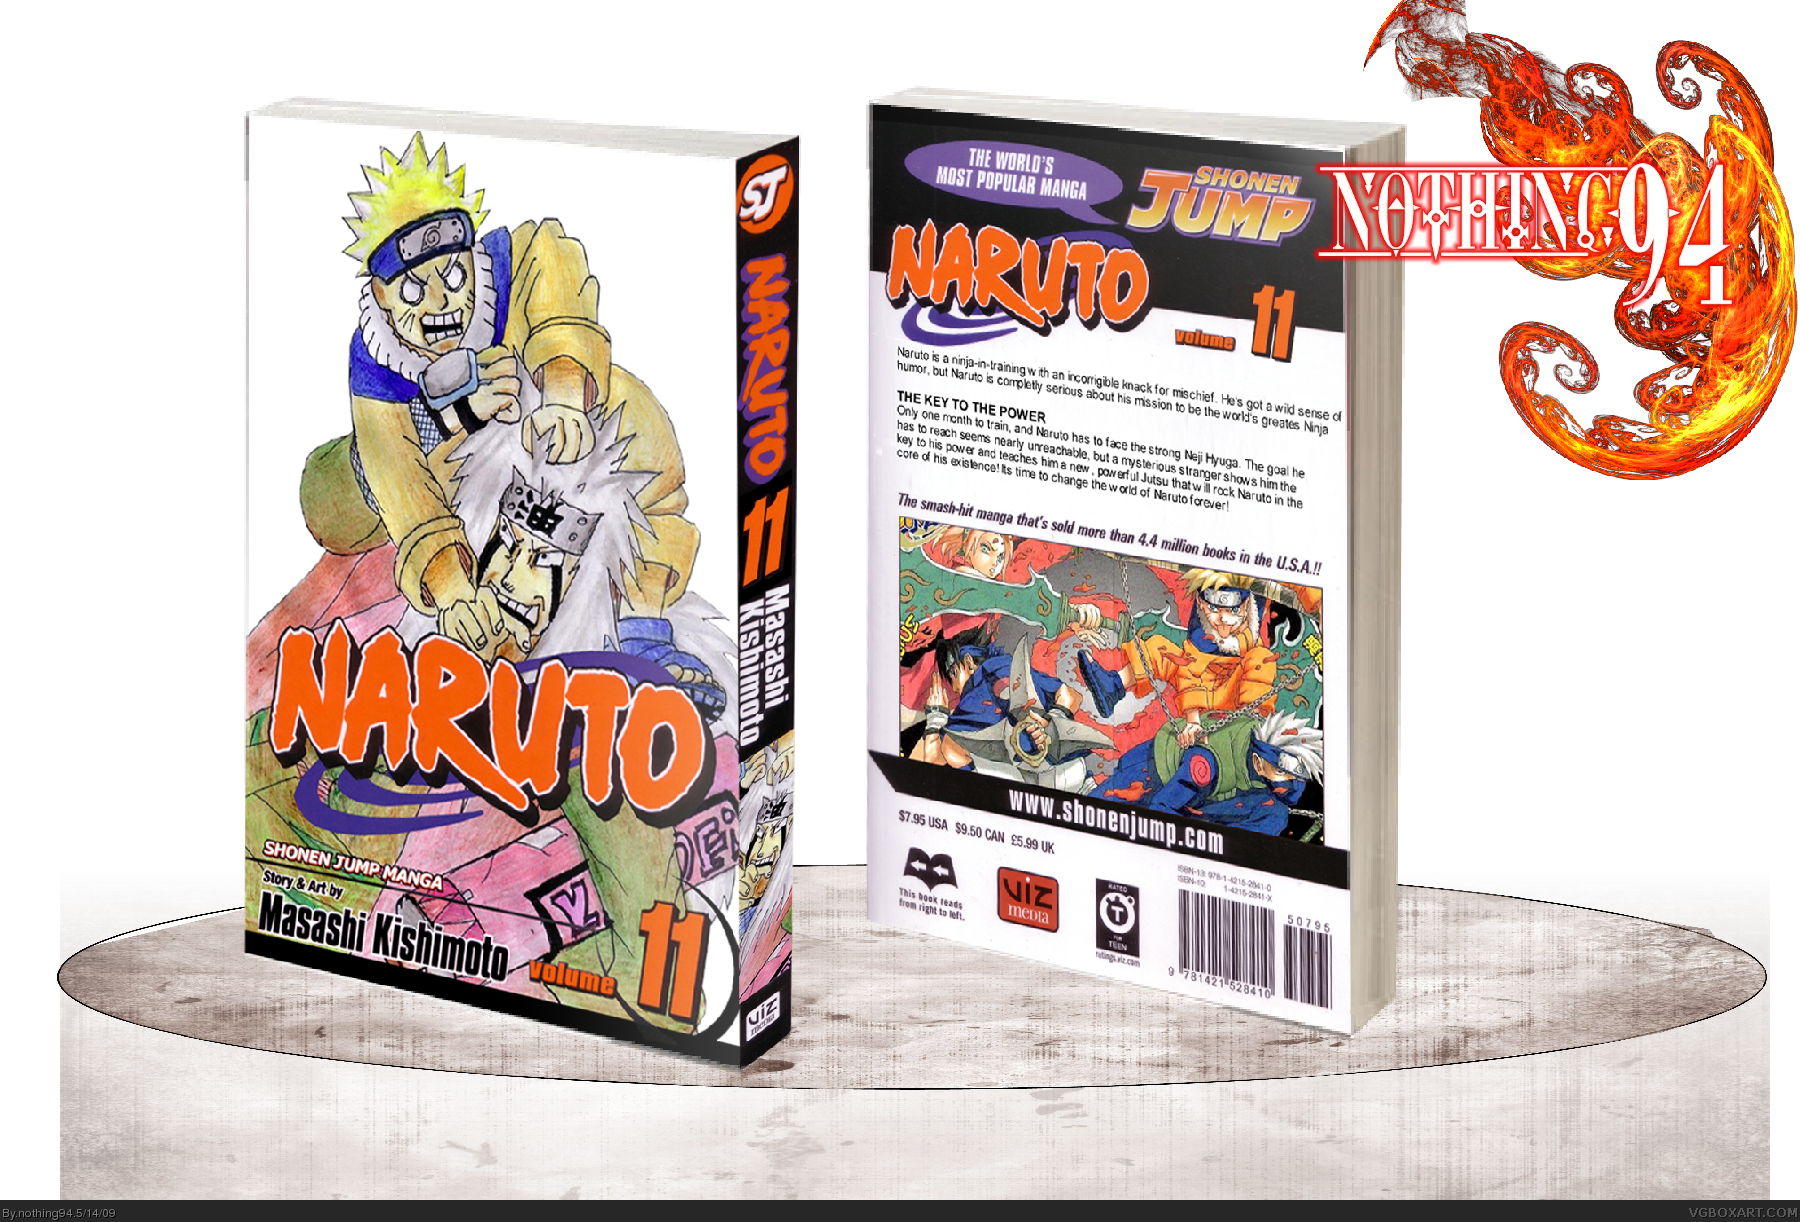 Naruto Volume 11 box cover